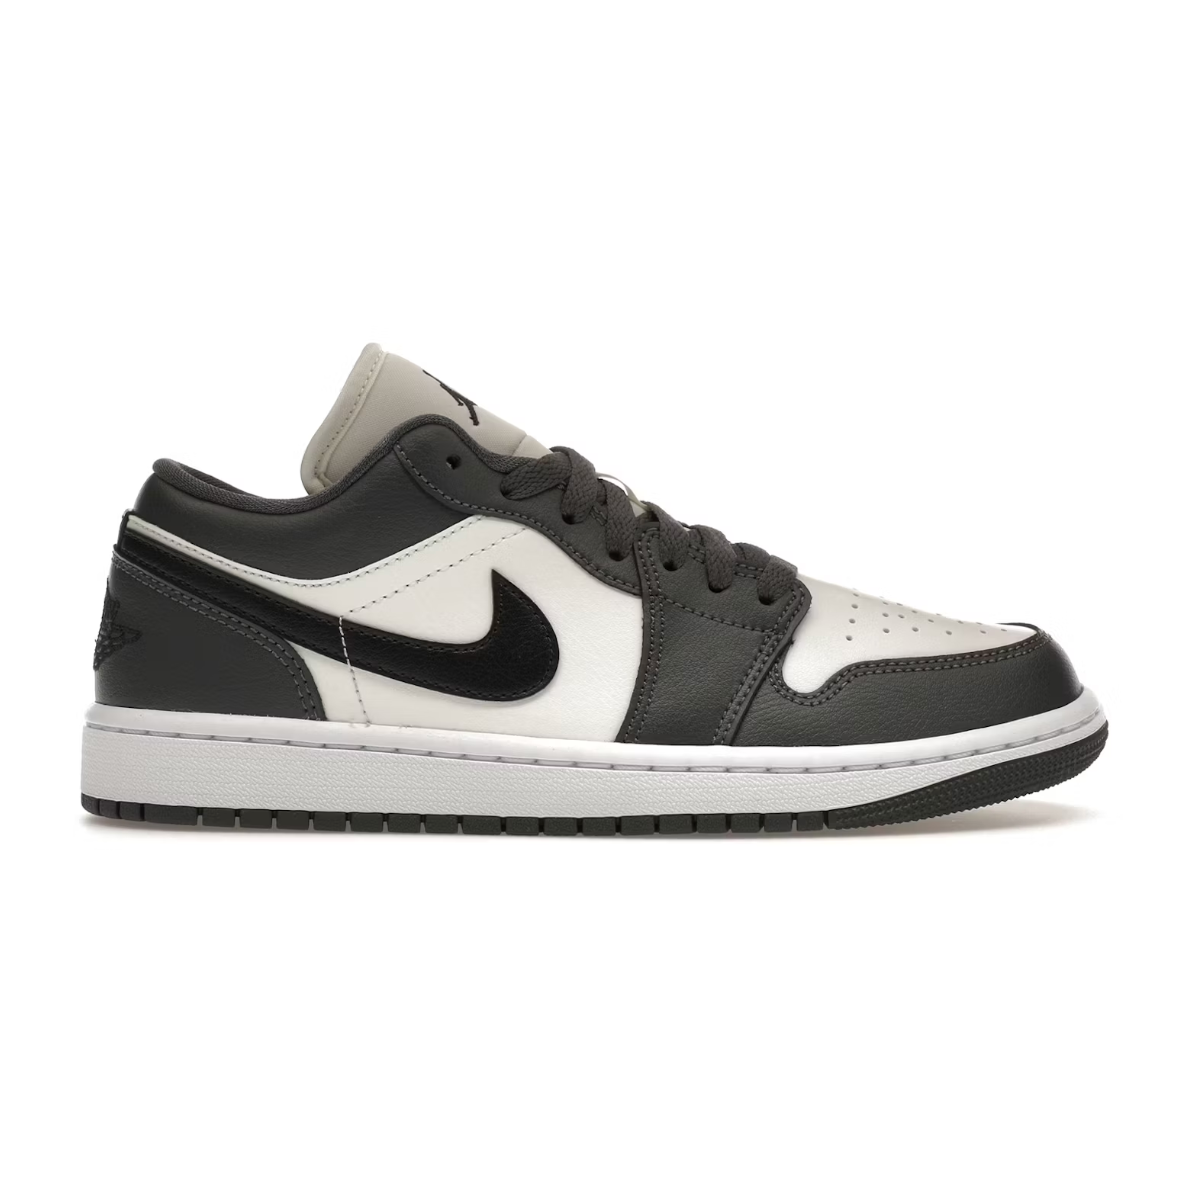 Jordan 1 Low Dark Grey - SA Sneakers